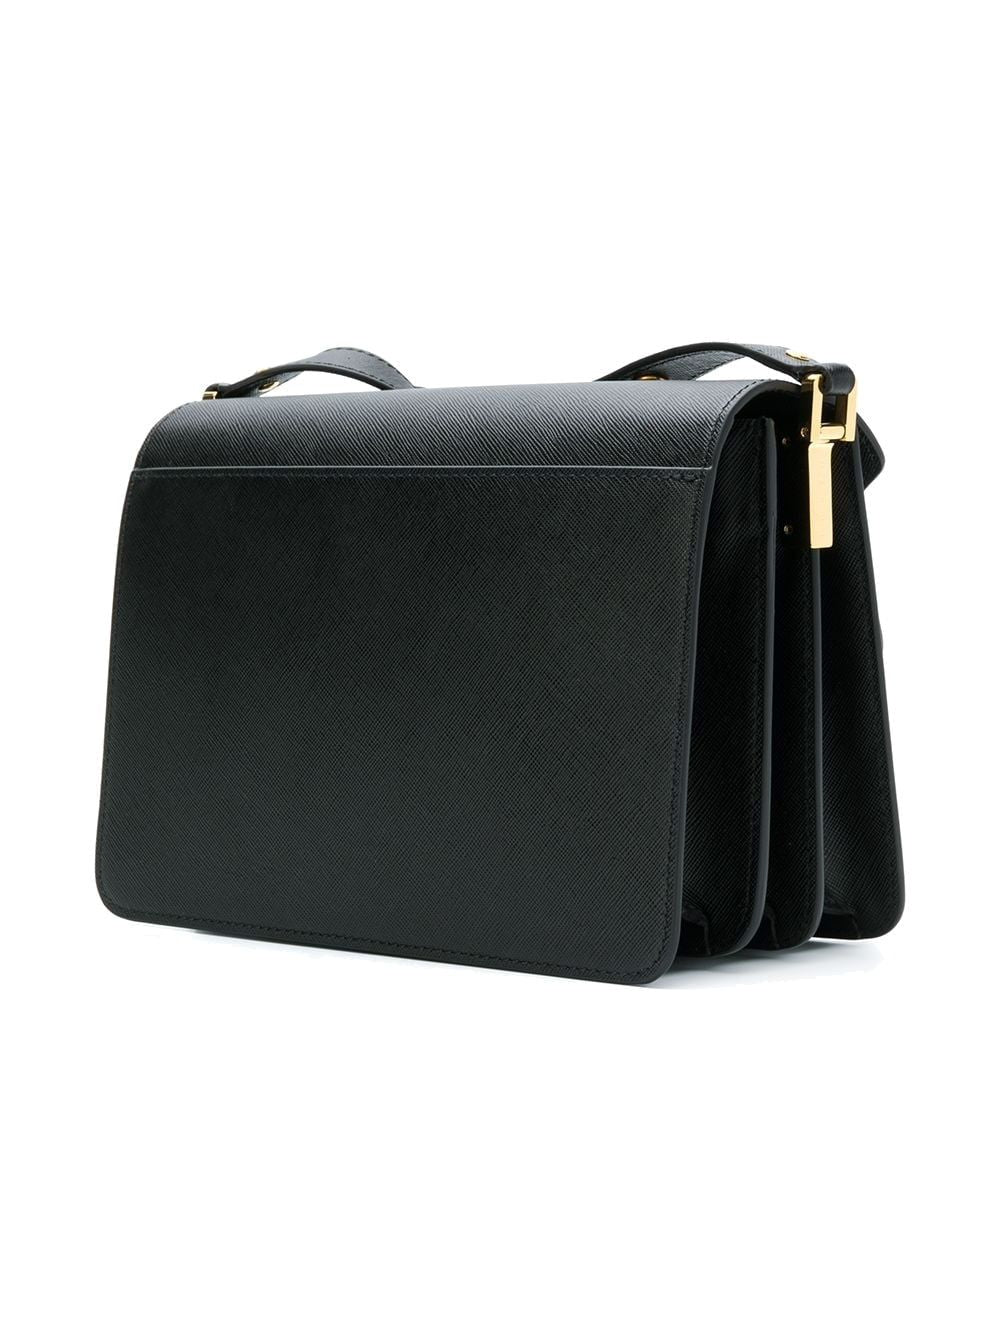 Black bag with gold details